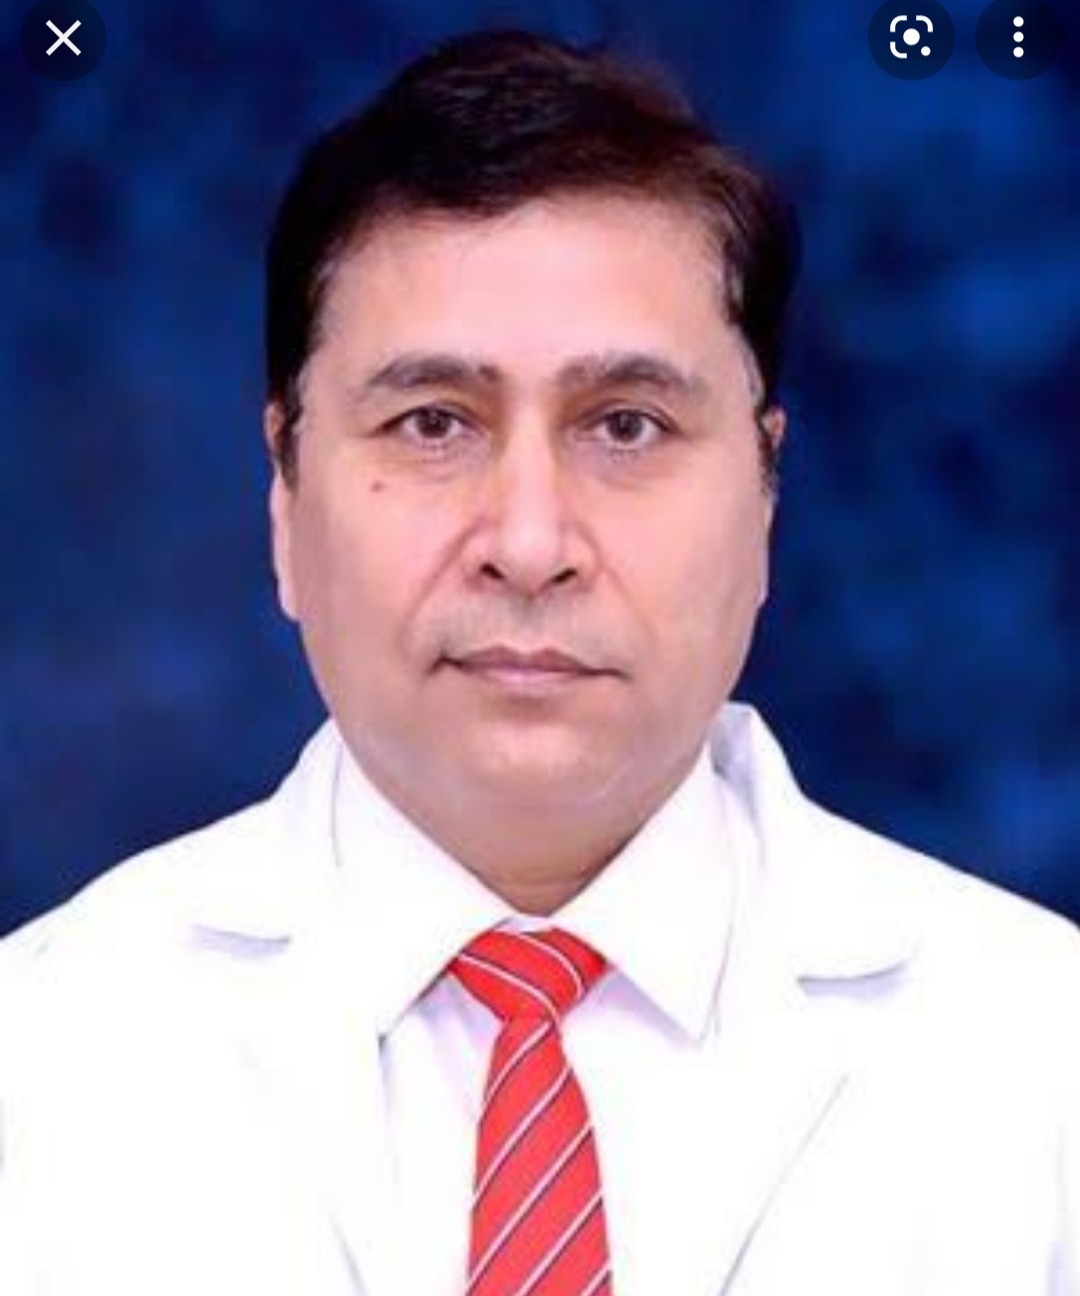 Dr. Ajay Panwar